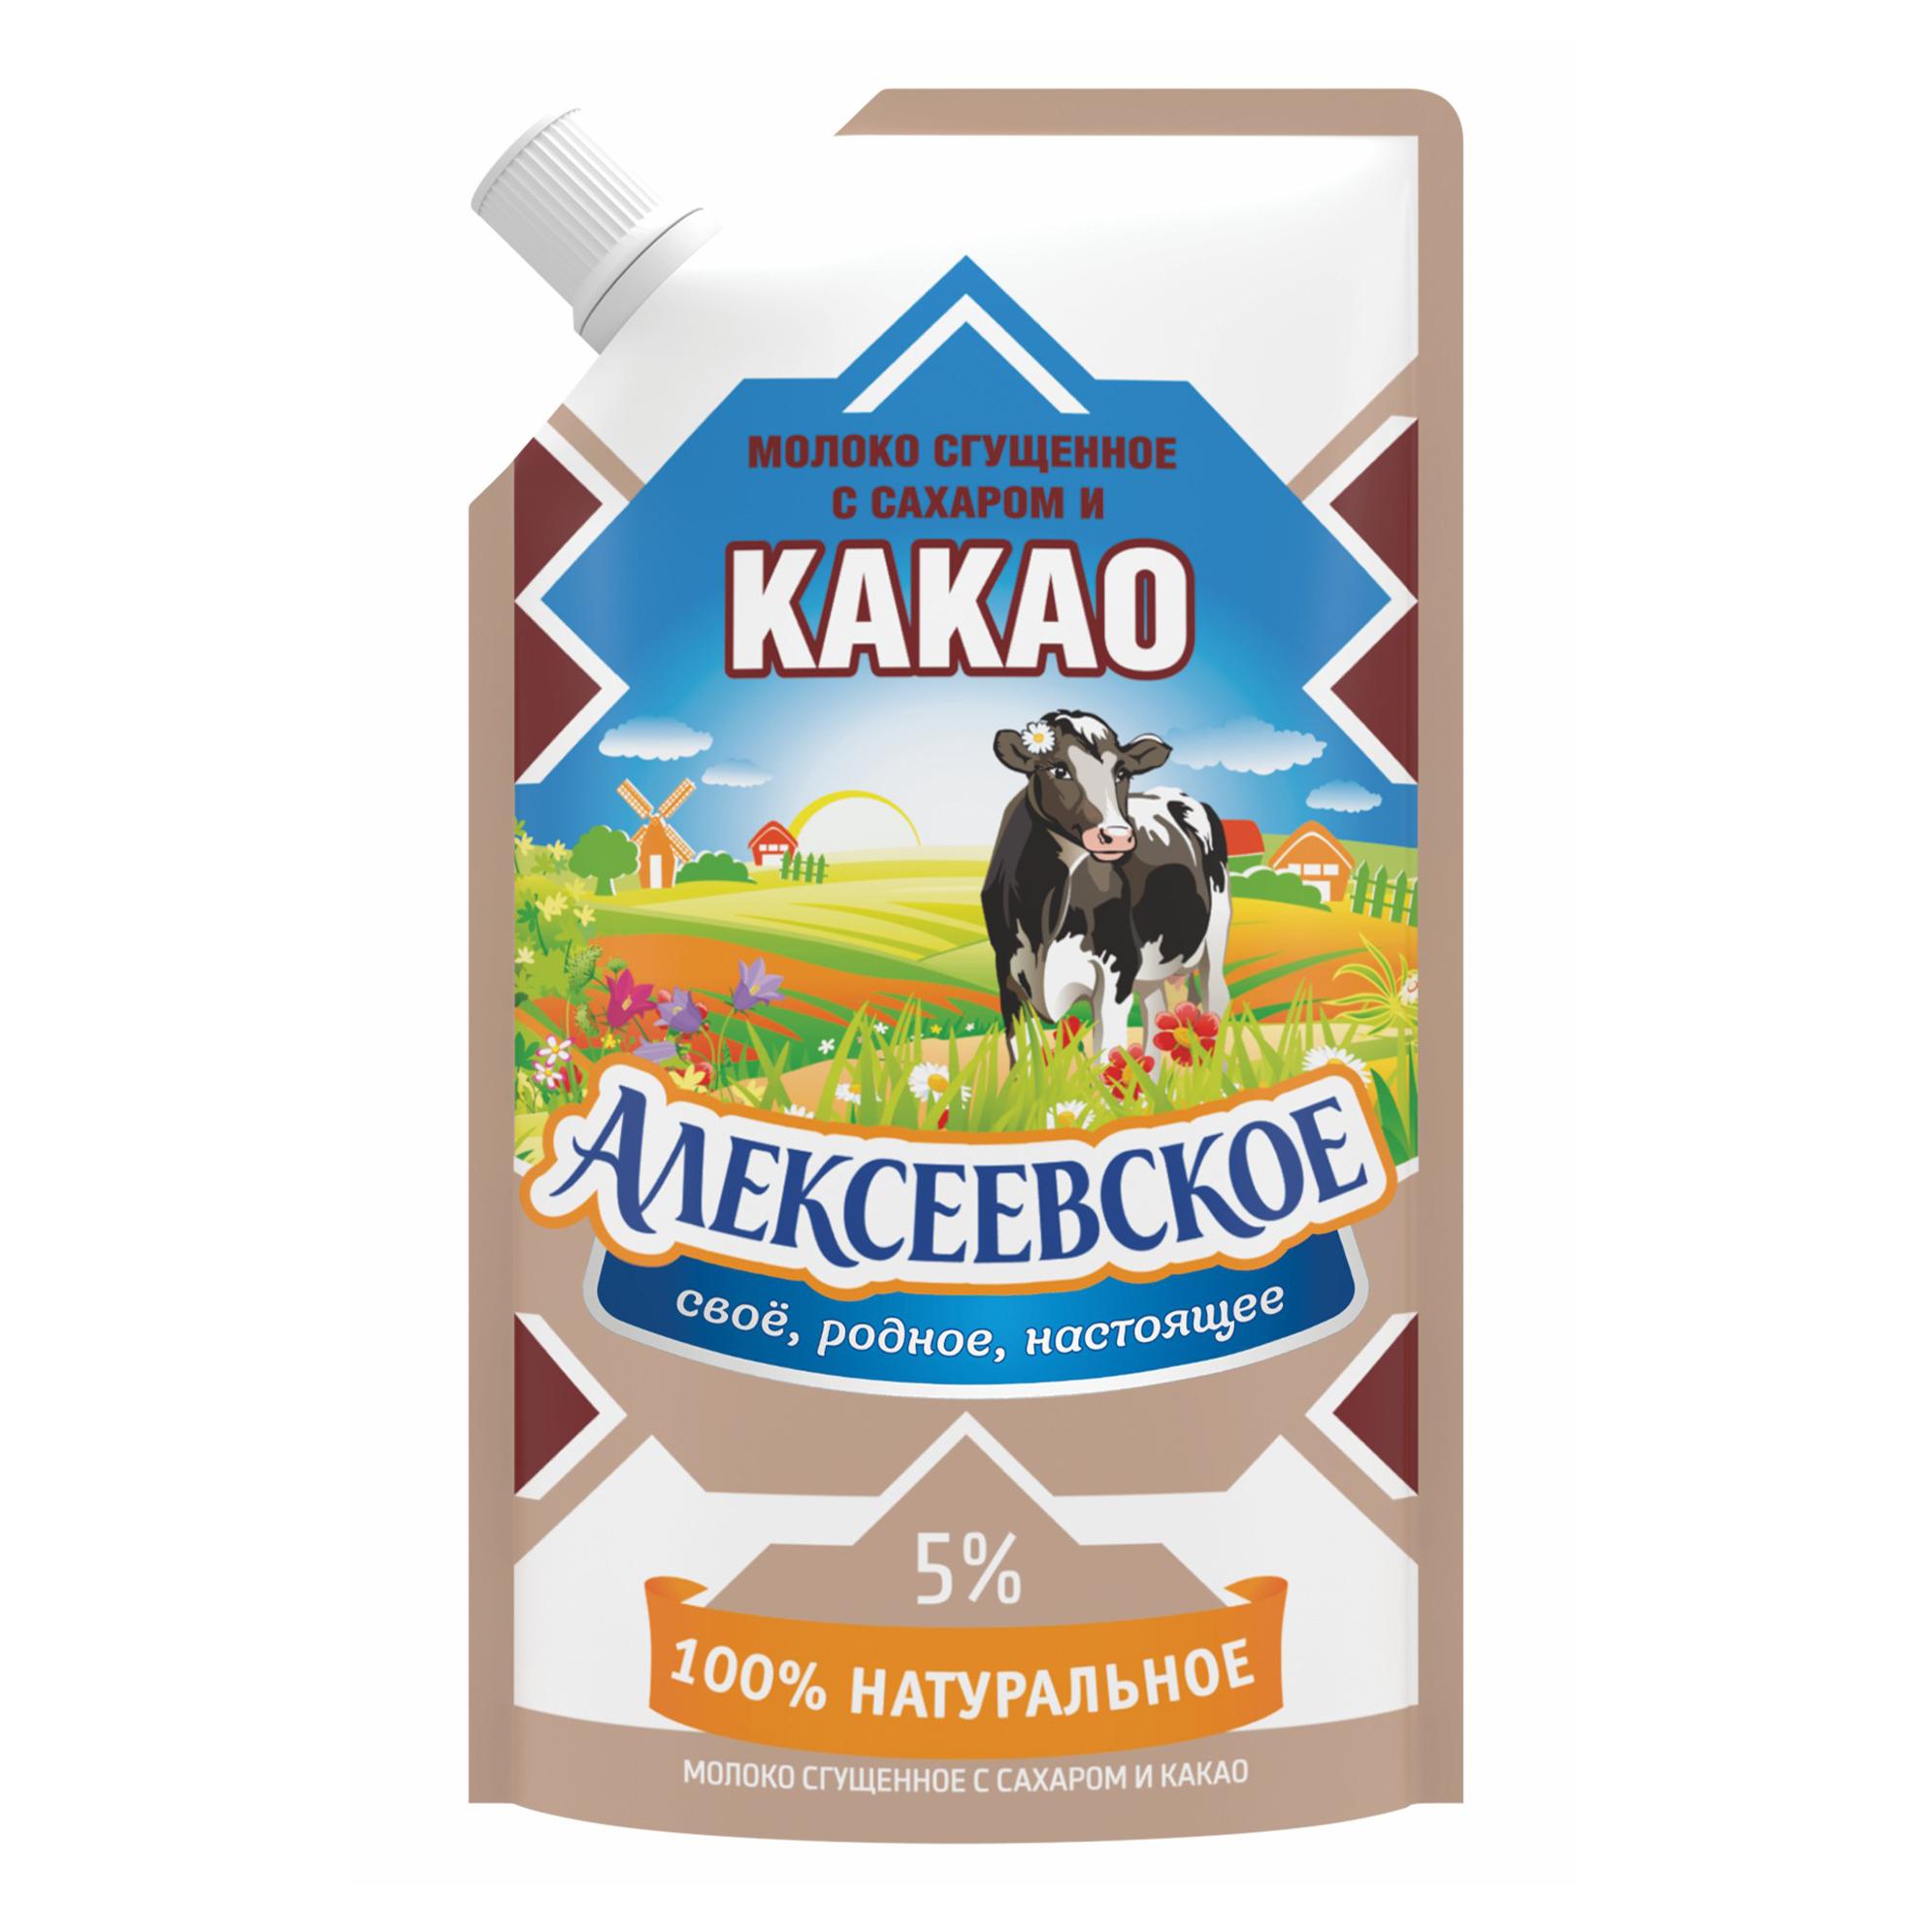 Какао со сгущ молоком Алексеевское дойпак 270г - интернет-магазин Близнецы